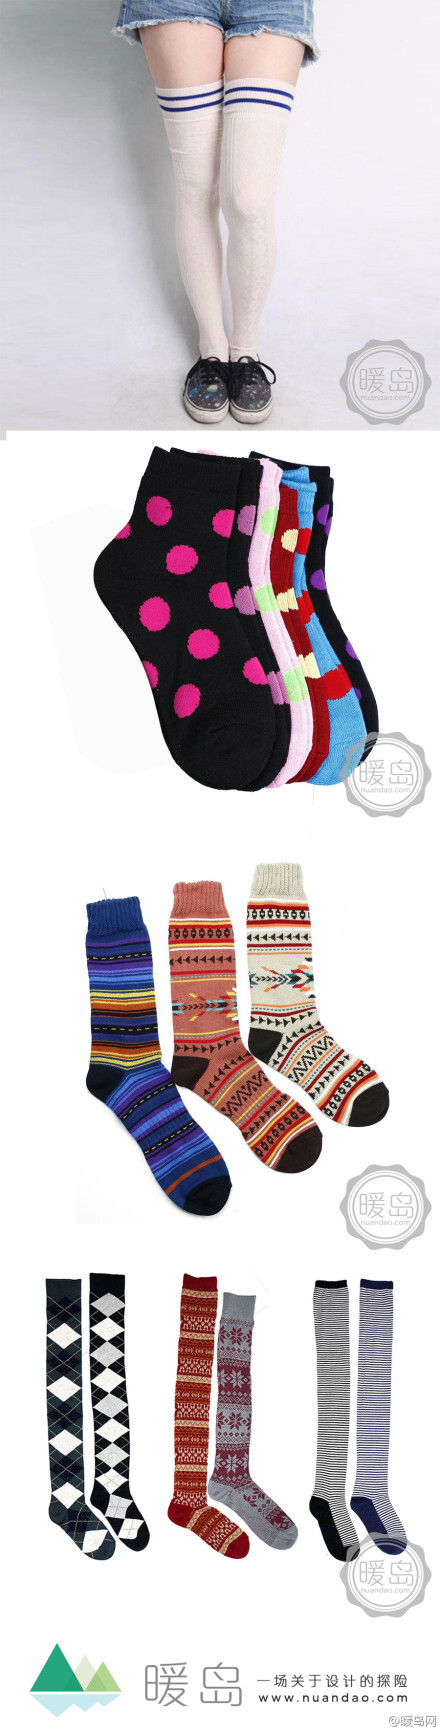 #暖岛推荐#【精选棉袜】古人云；“韤，足衣也&quot;，意思是说“袜子，是一种穿在脚上的服饰用品”。时至今日，袜子的选择已经成为了日常搭配的重点元素之一，它体现了我们的个人品味和生活品质。这次，随着圣诞节的临近，我们为你准备了一些图案带有浓厚节日气息的袜子！快来挑选吧！http://t.cn/zjte1Jg